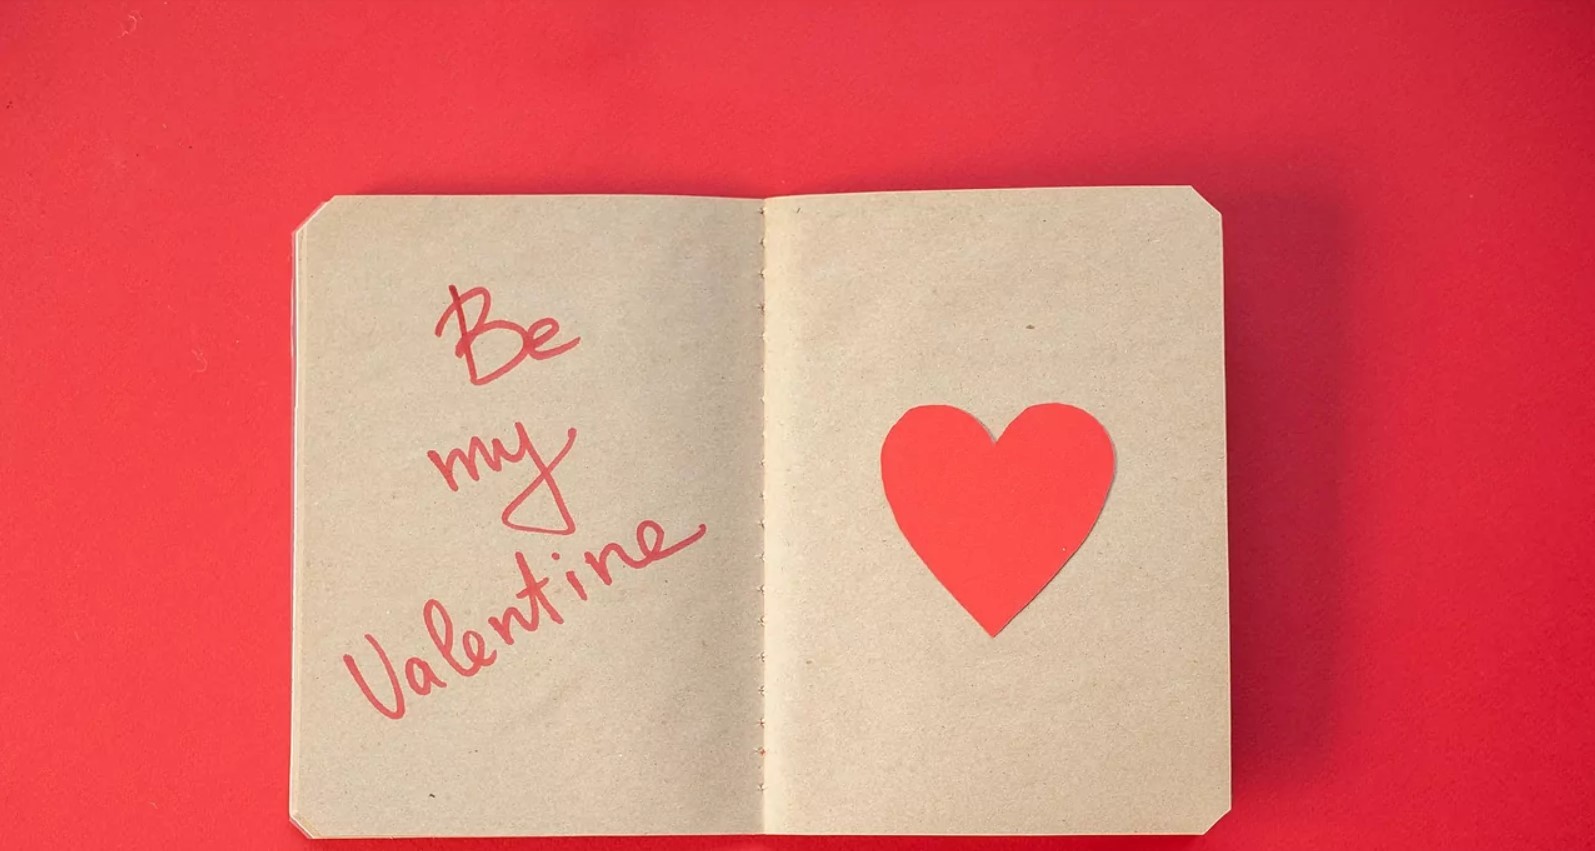 Frases de San Valentn bonitas para parejas y amigos.